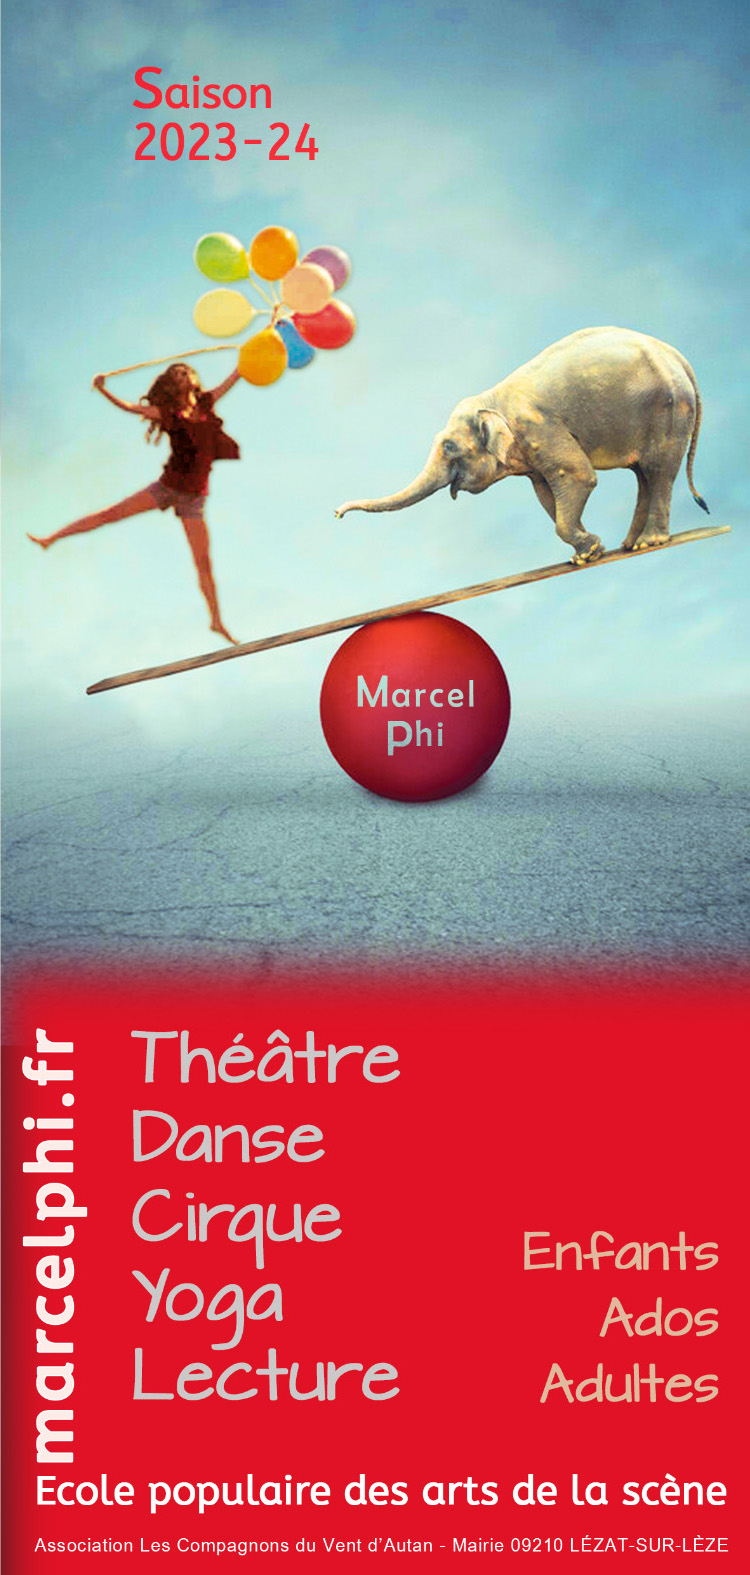 Ecole populaire des arts de la scène Marcel Philibert - Saison 2023-24 : Théâtre, Danse, Cirque, Yoga, Lecture...